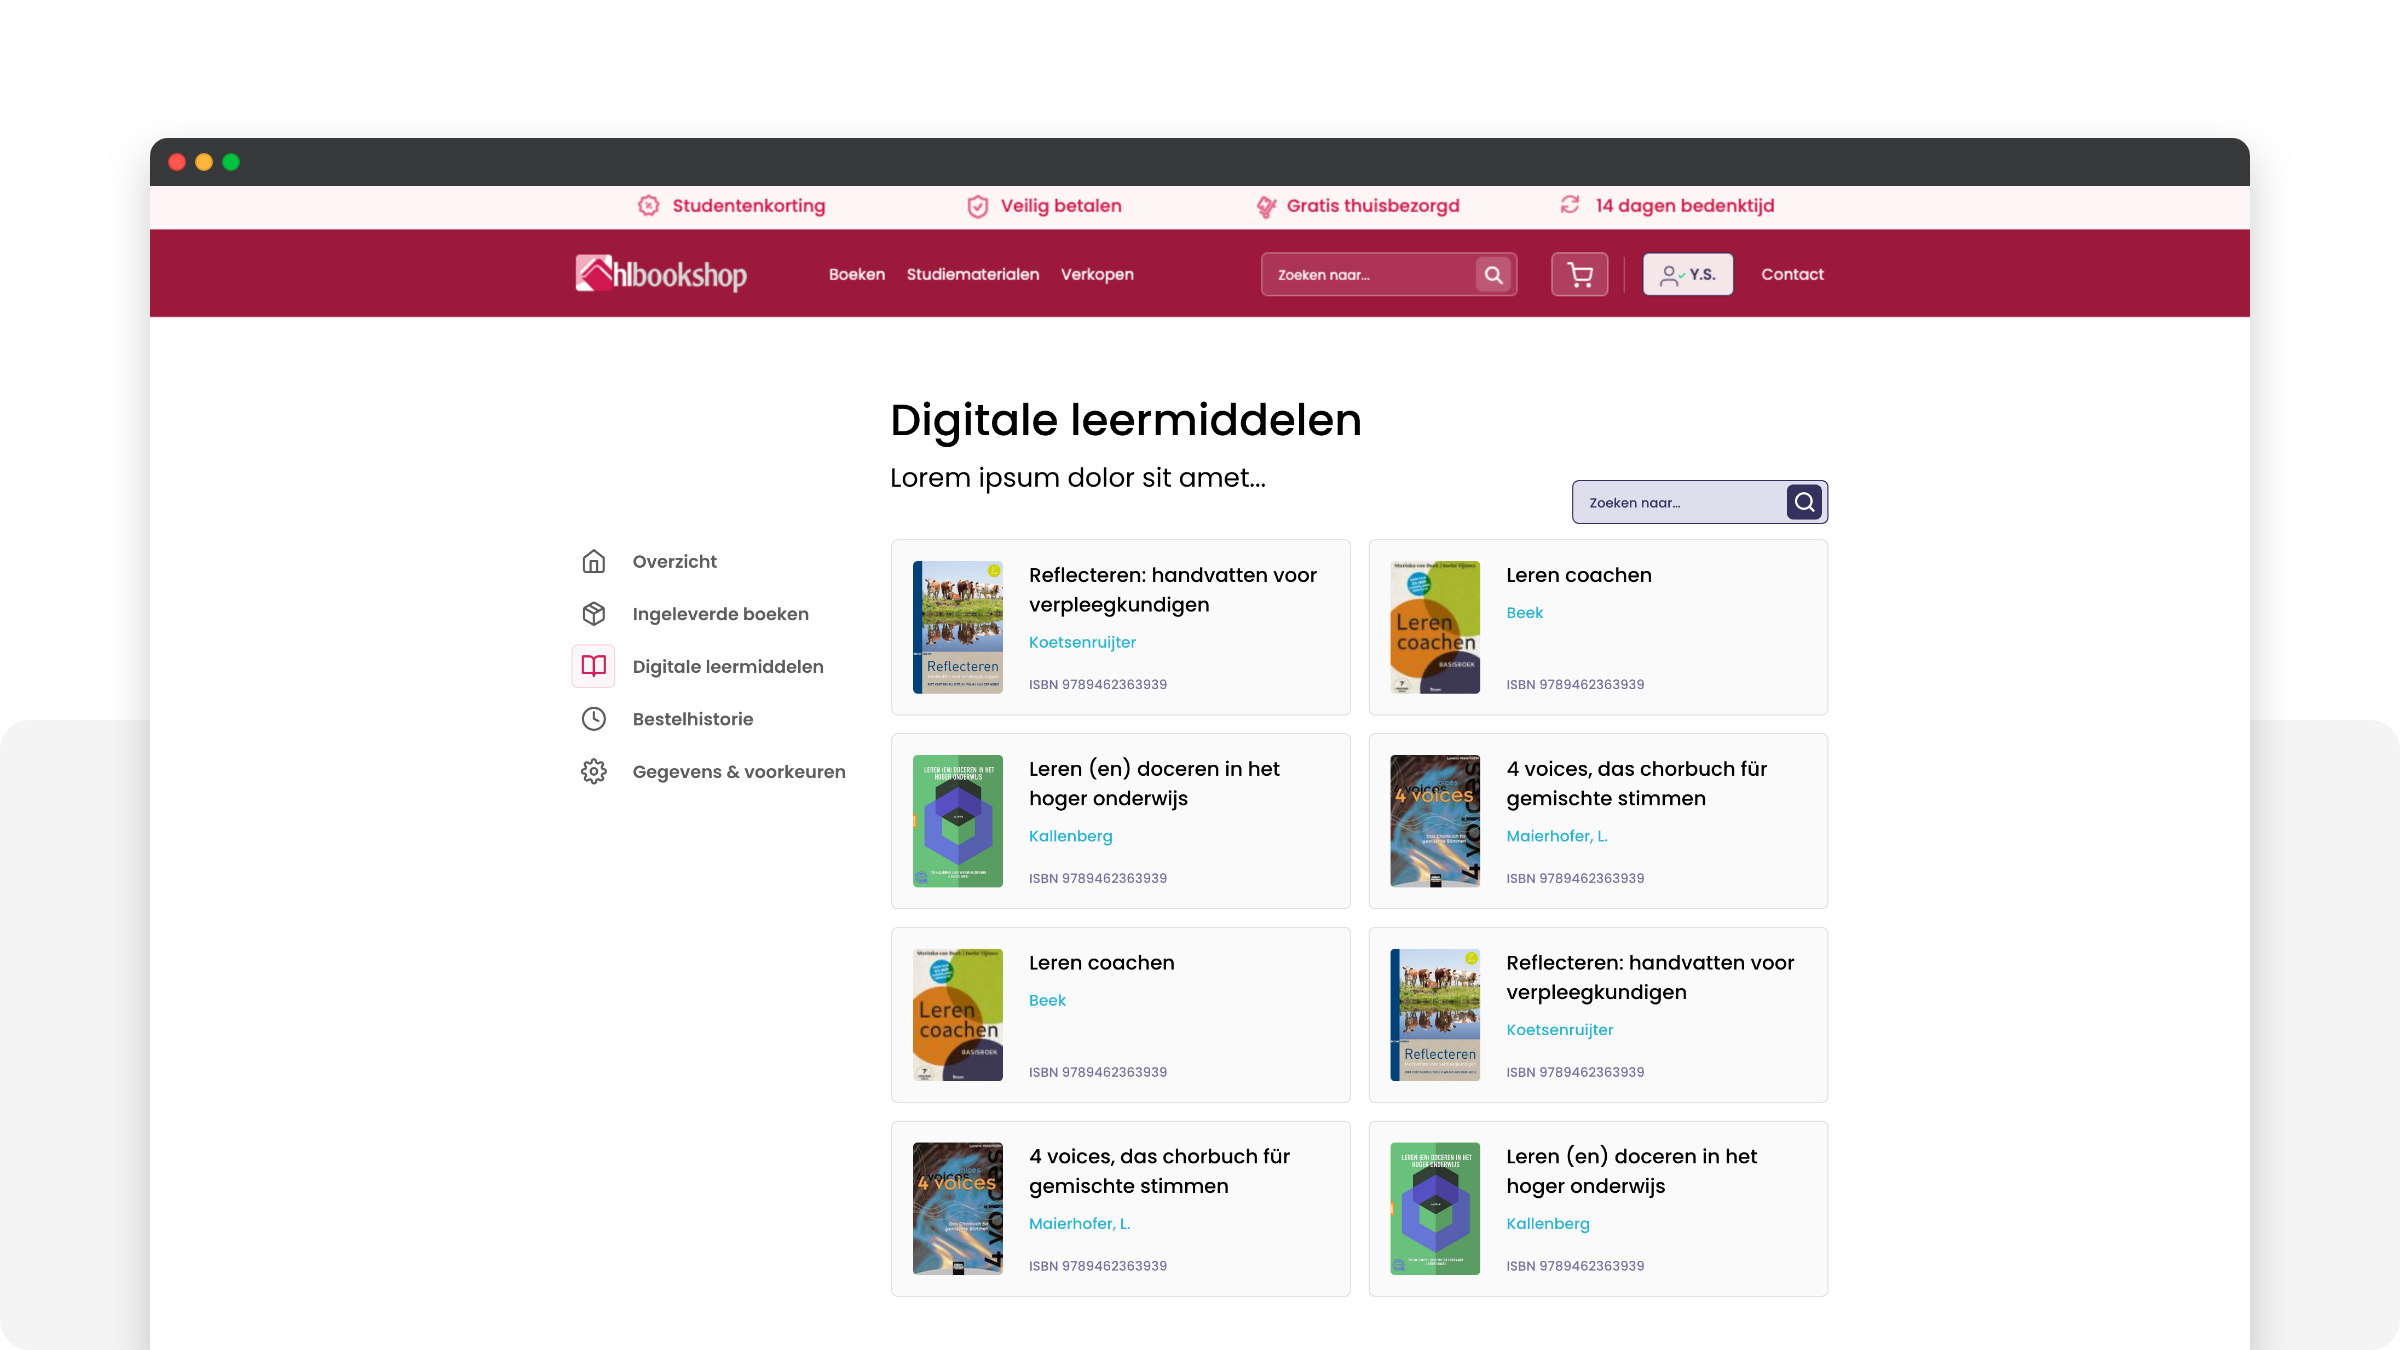 Digitale leermiddelen. Vanuit hier kunnen studenten aangekochte e-books lezen.